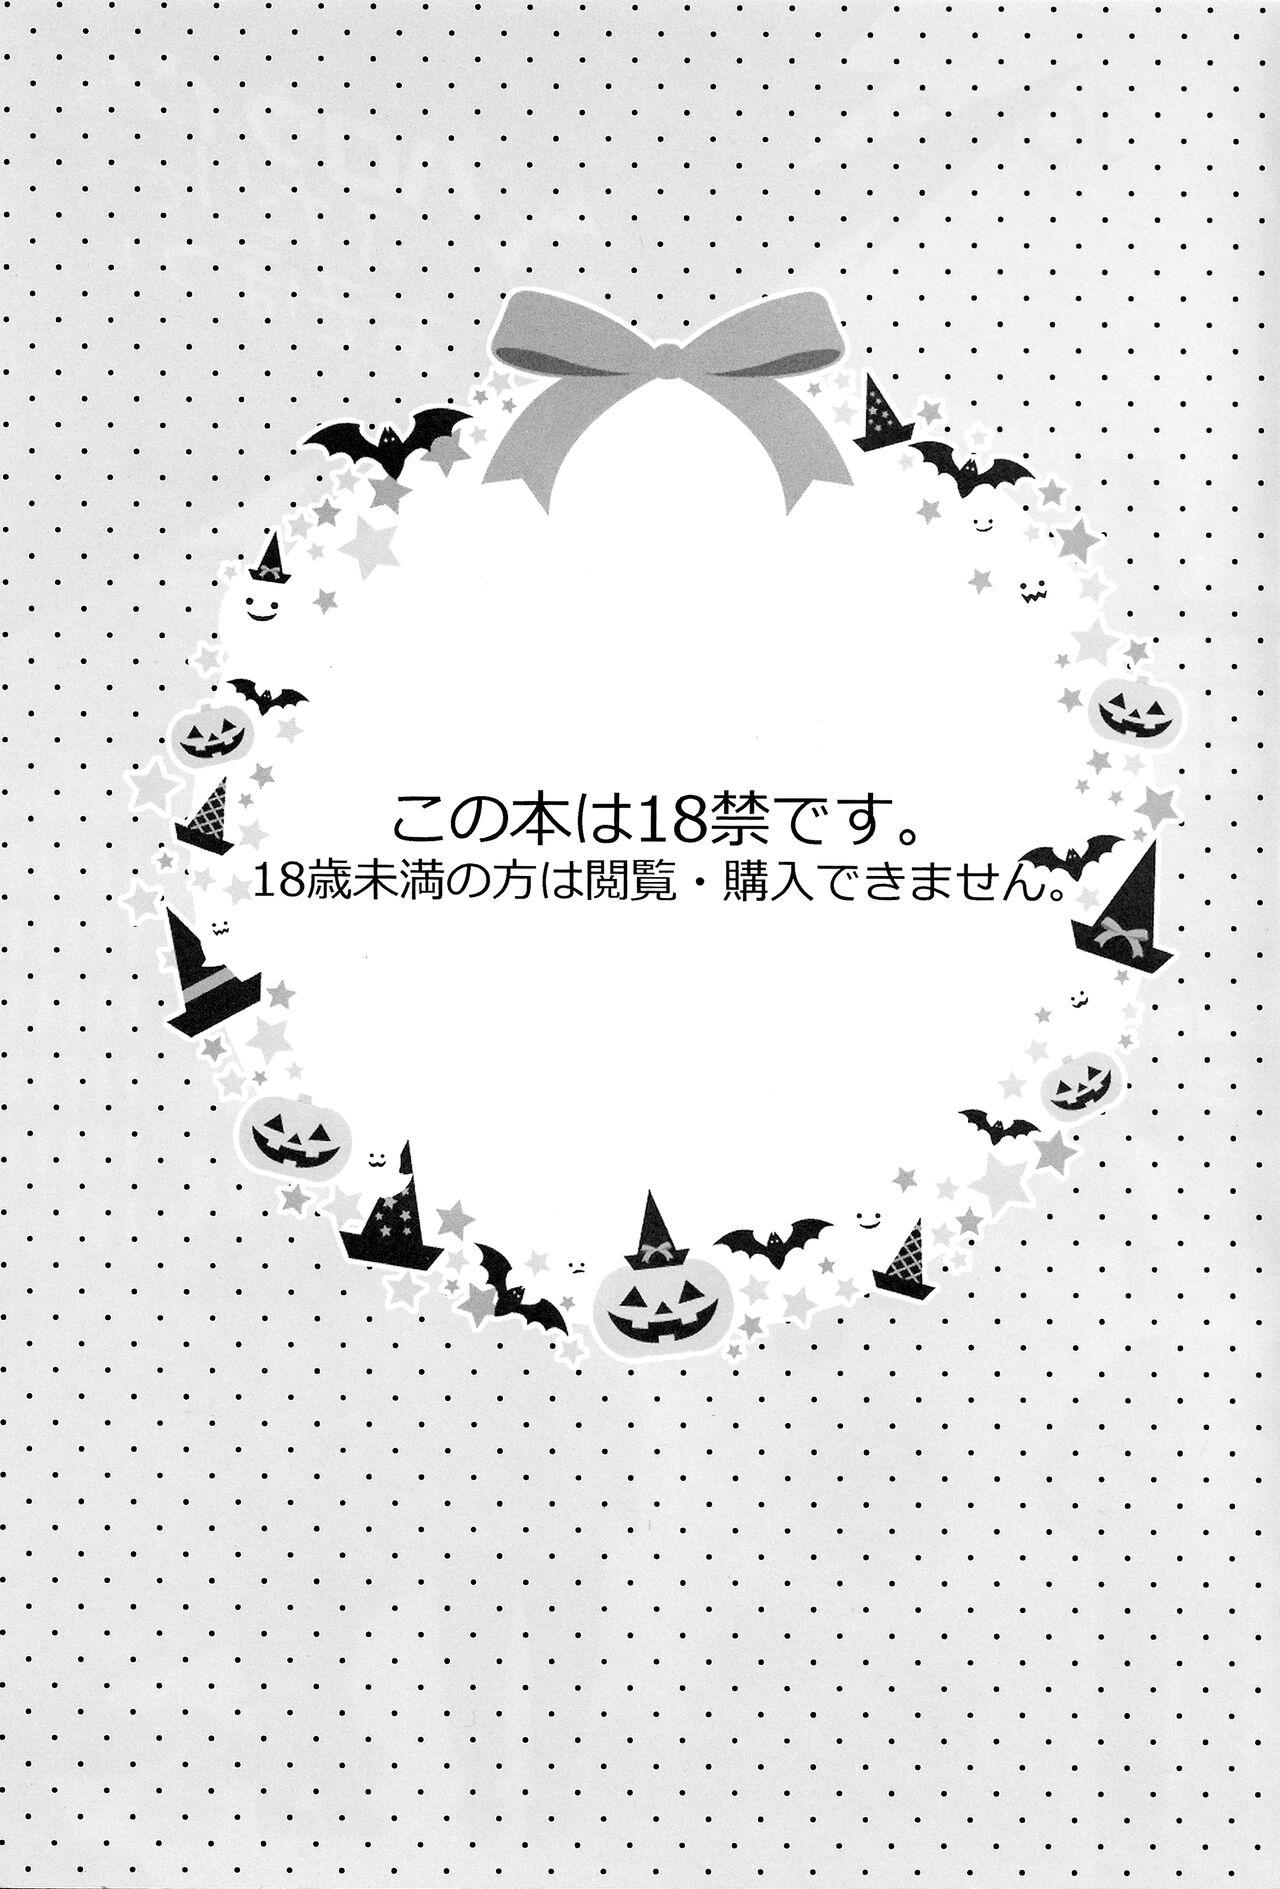 Halloween wa Futari de Asobo! | Let's Play Together on Halloween! 2